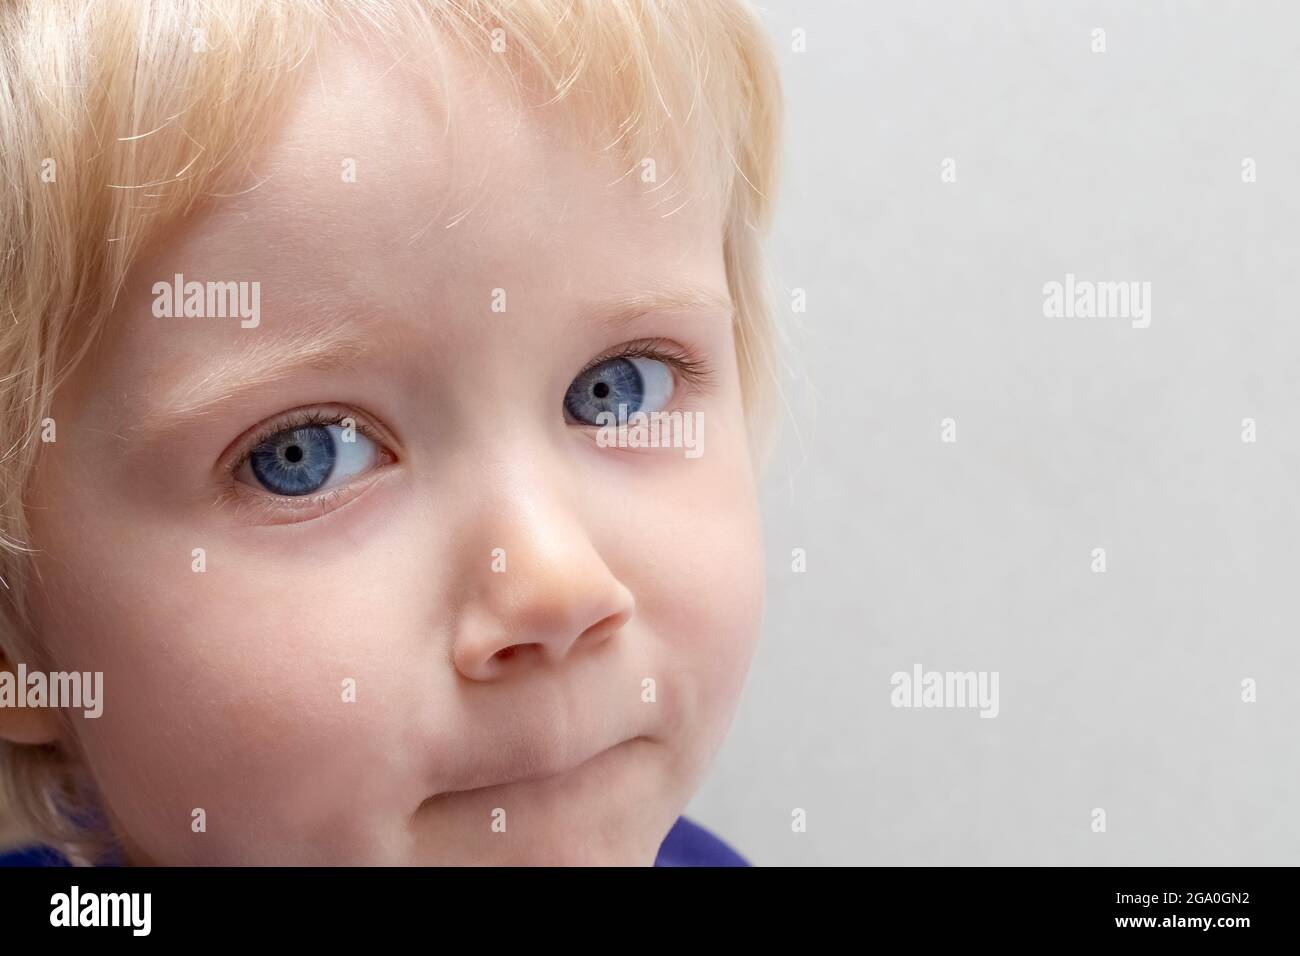 Ritratto di un bambino con capelli biondi, occhi blu, pelle chiara su sfondo grigio. Copiare lo spazio a destra. Foto Stock